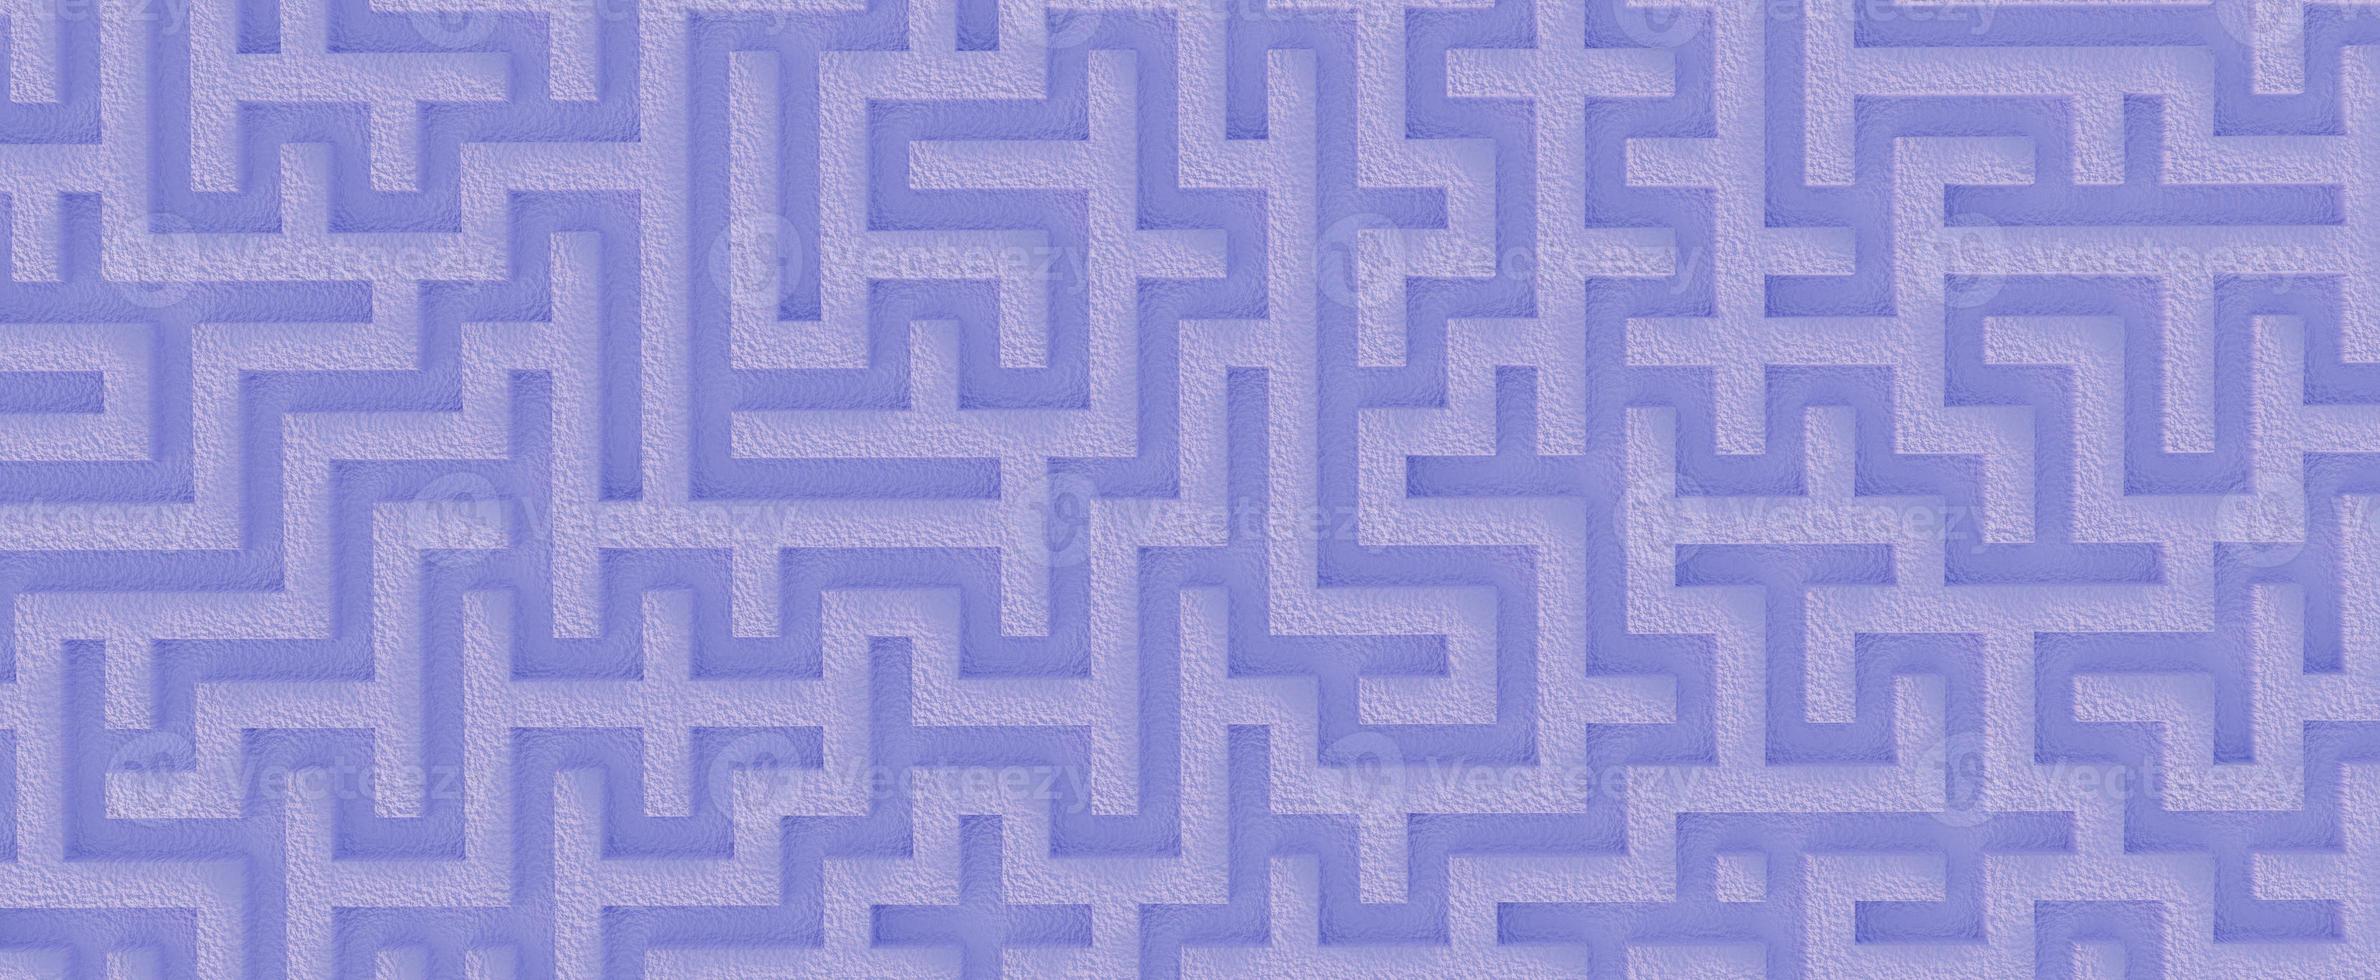 labyrinthe de pierre sinueux. puzzle vide bleu avec rendu 3d sable blanc et puzzles géométriques. stratégie de choix et solution de problèmes compliqués dans la vie photo